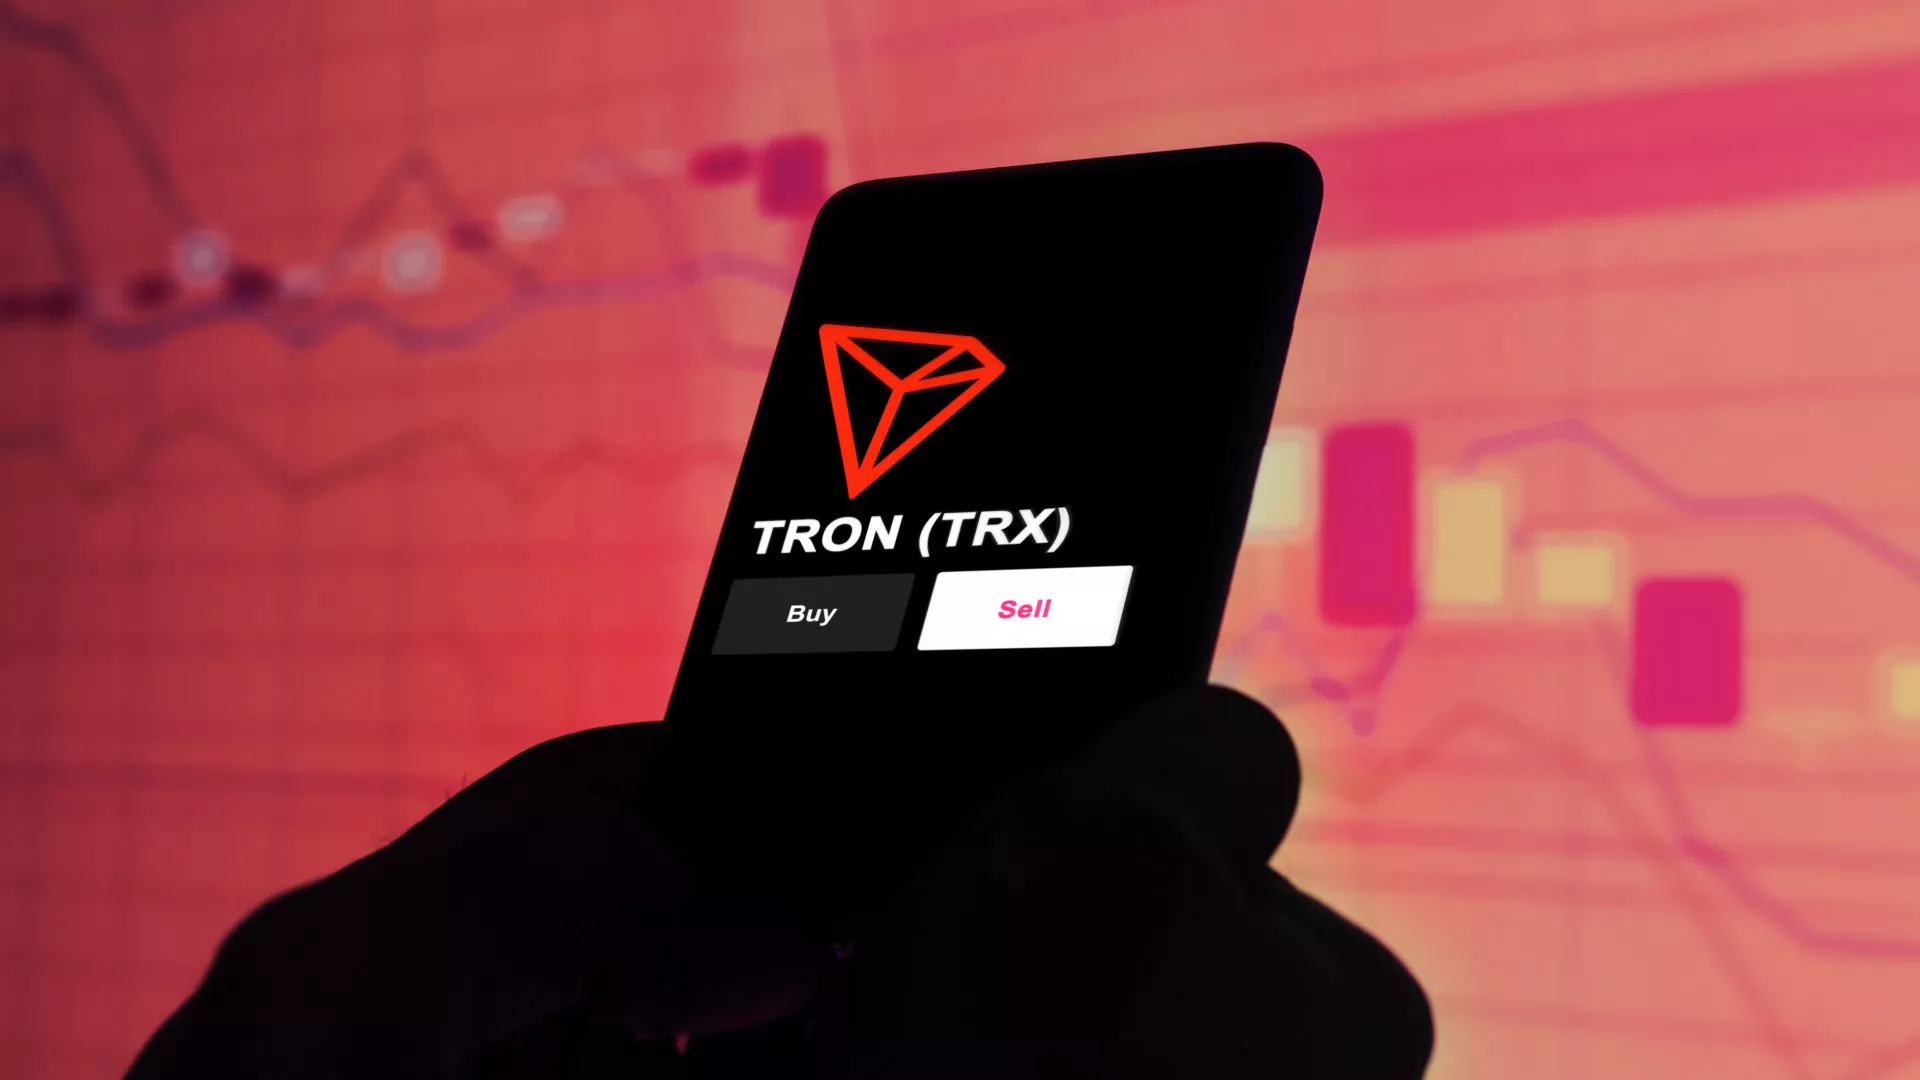 Tron (TRX) bereikt nieuw record van 117 miljoen gebruikers